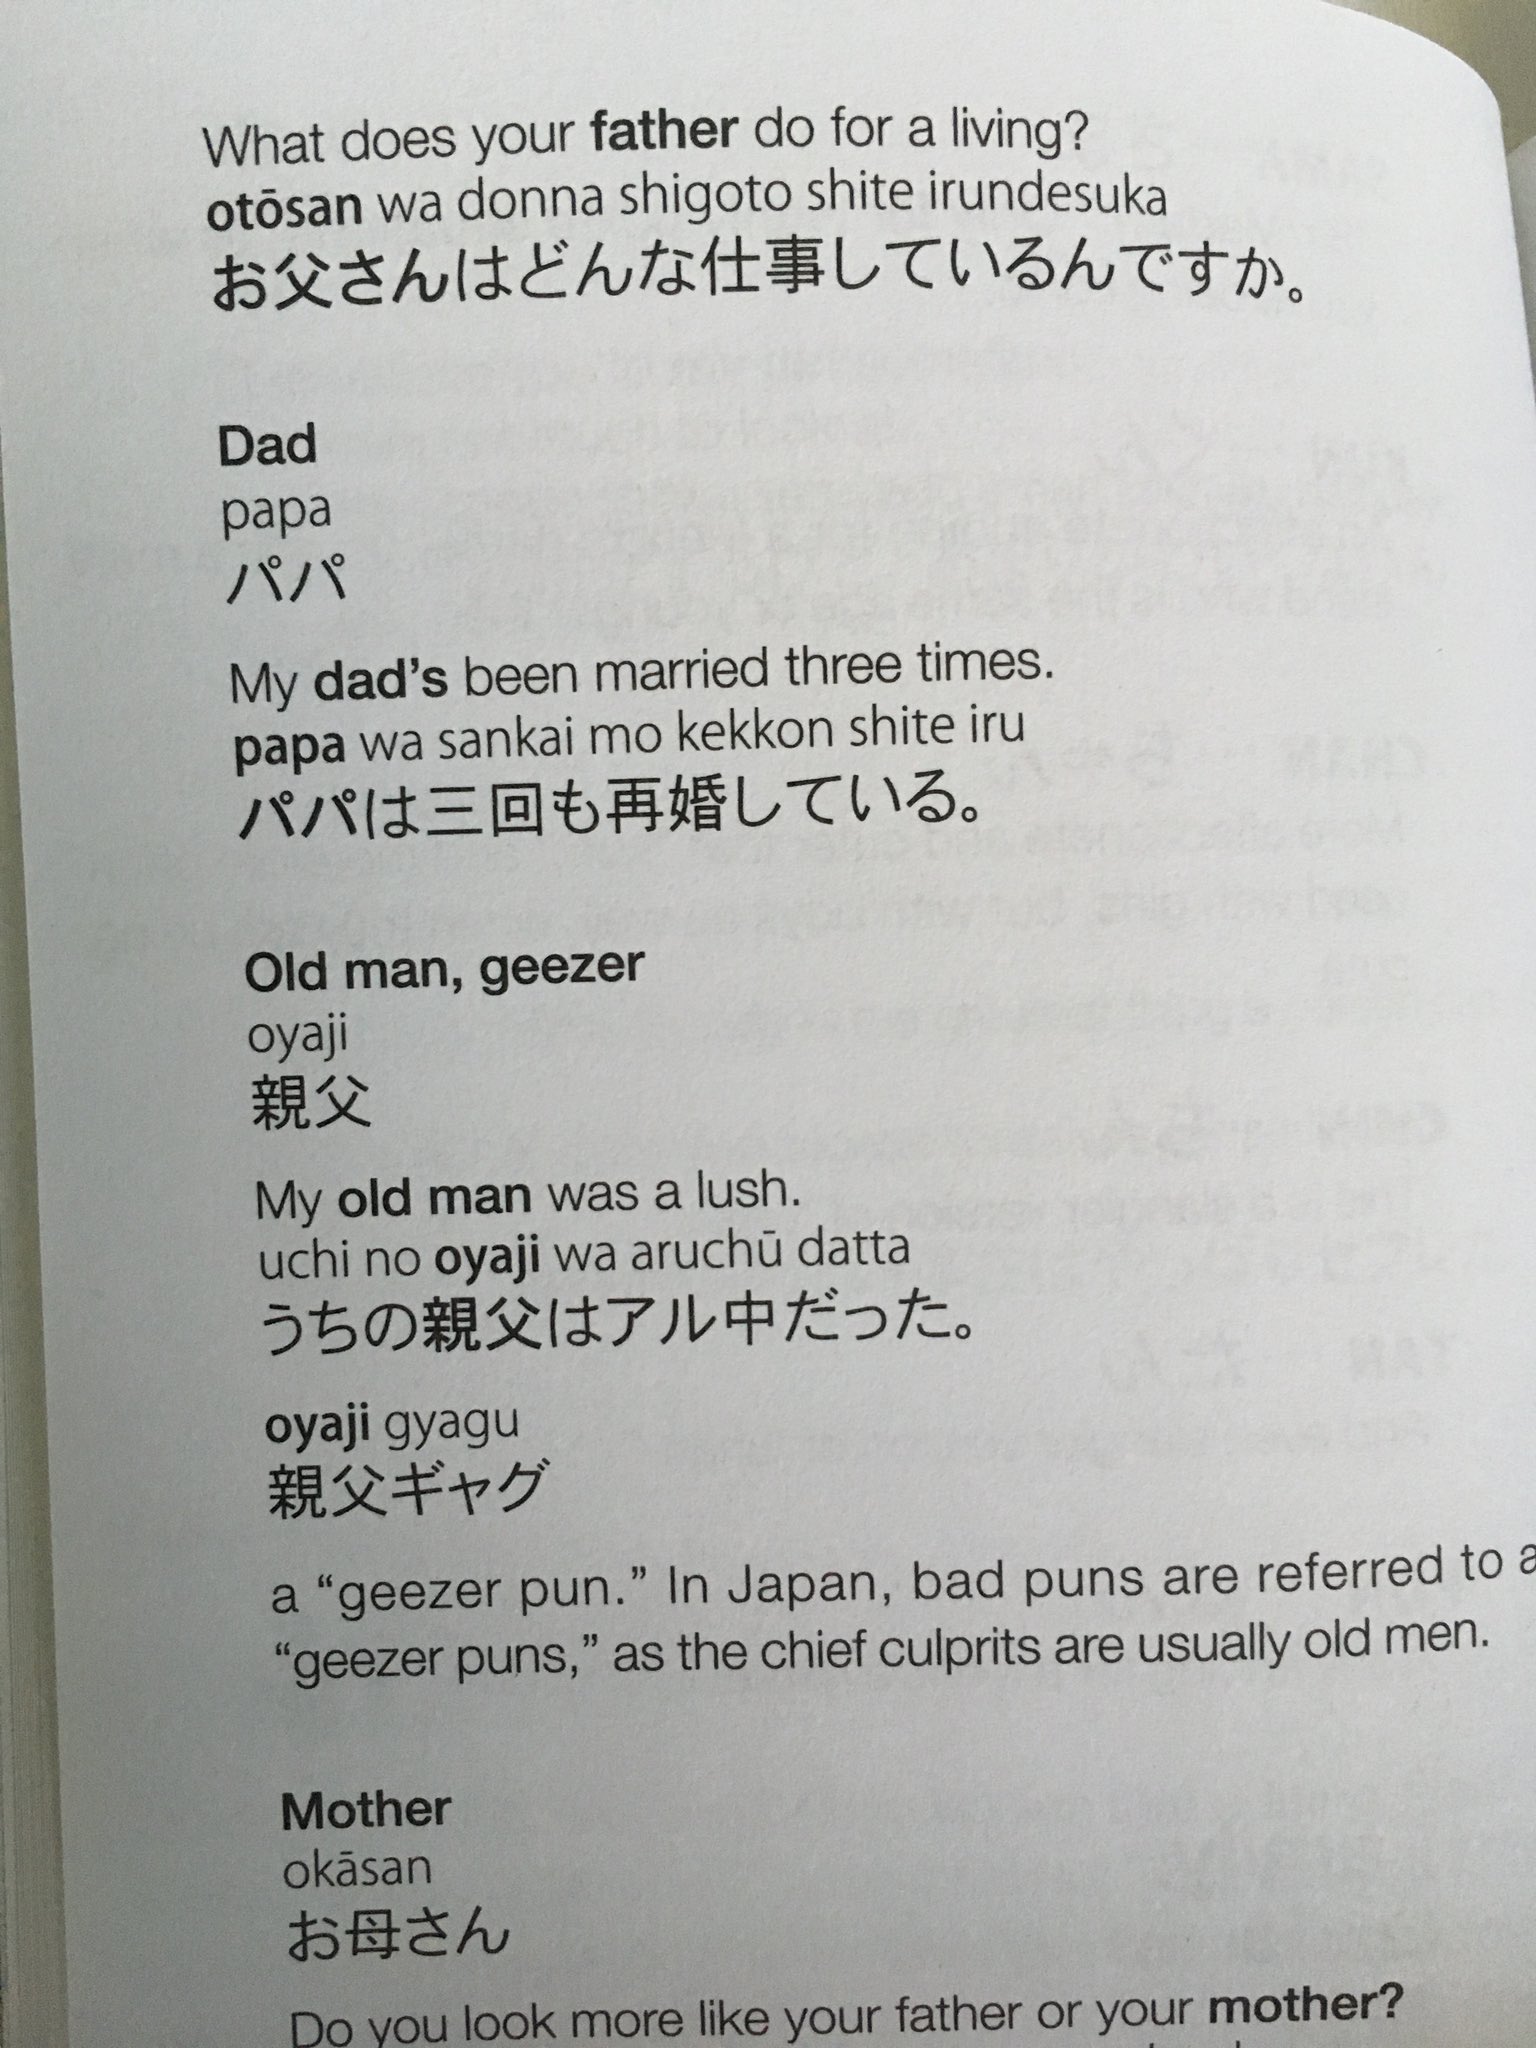 デッドプー太郎 ハワイの本屋で買った日本語の教科書がパワーワードに溢れていた T Co Rxidw4fjgg Twitter